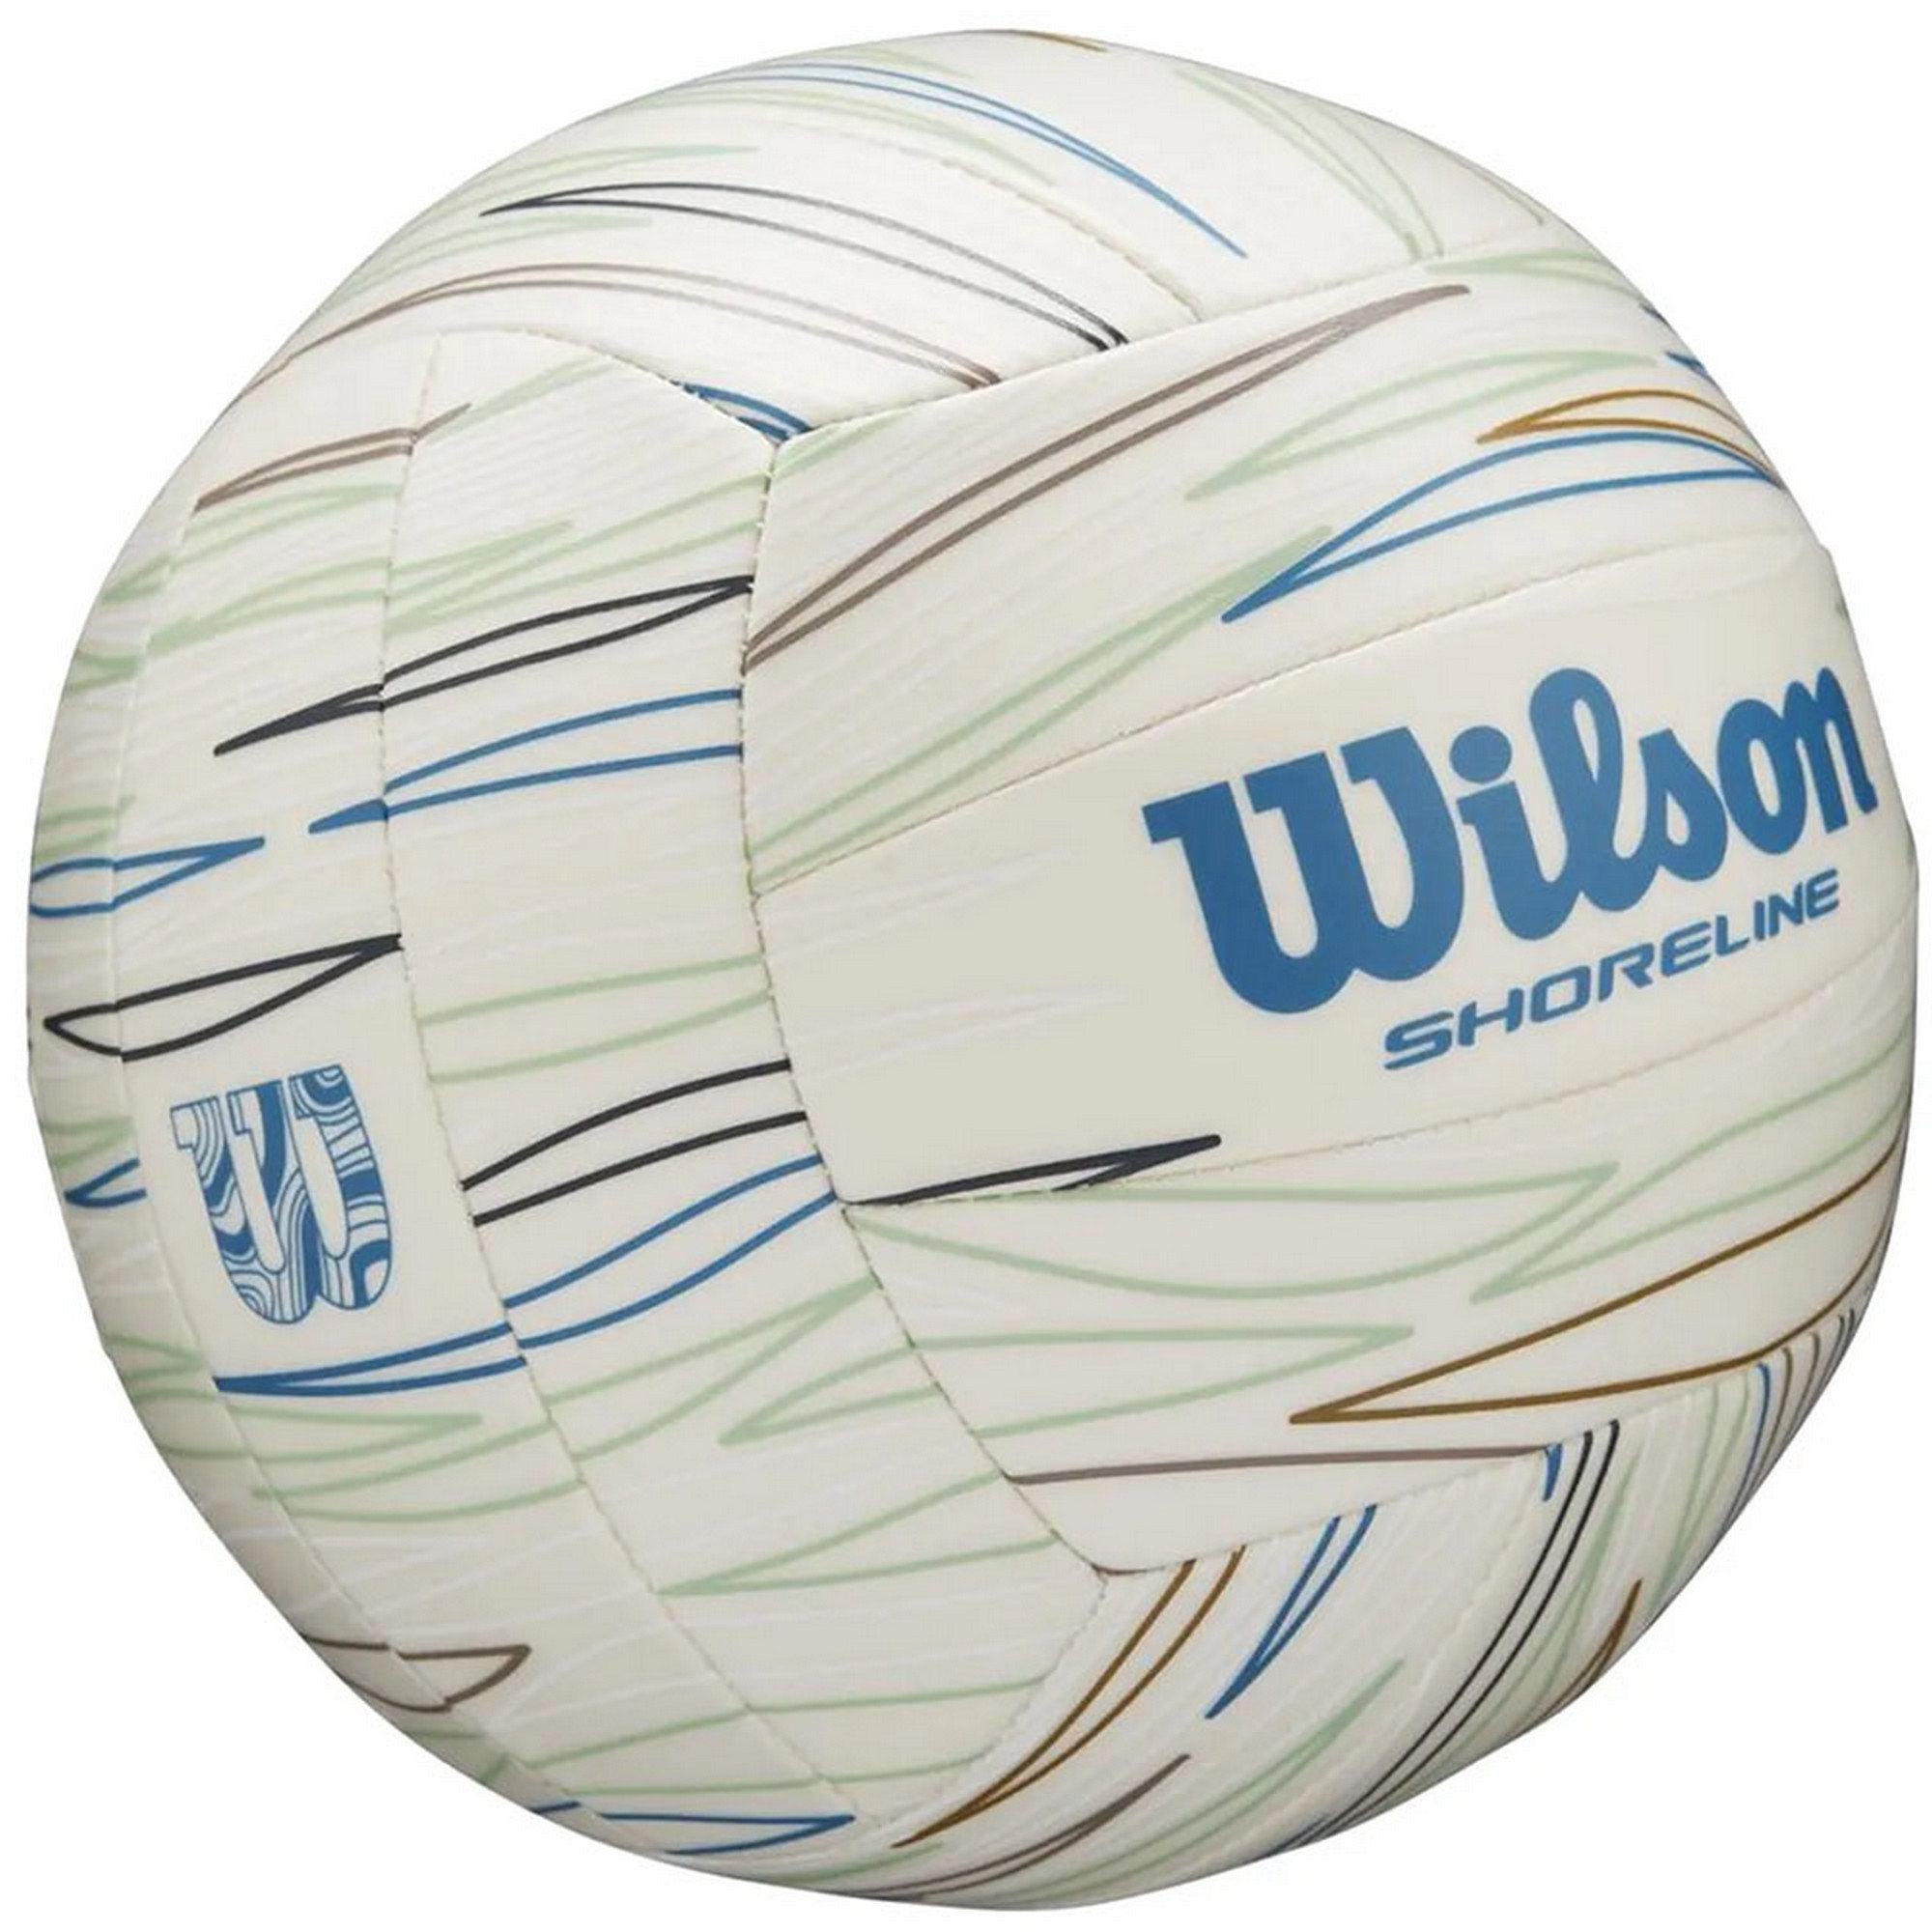 Мяч волейбольный Wilson Shoreline Eco Volleyball WV4007001XB р.5 2000_2000